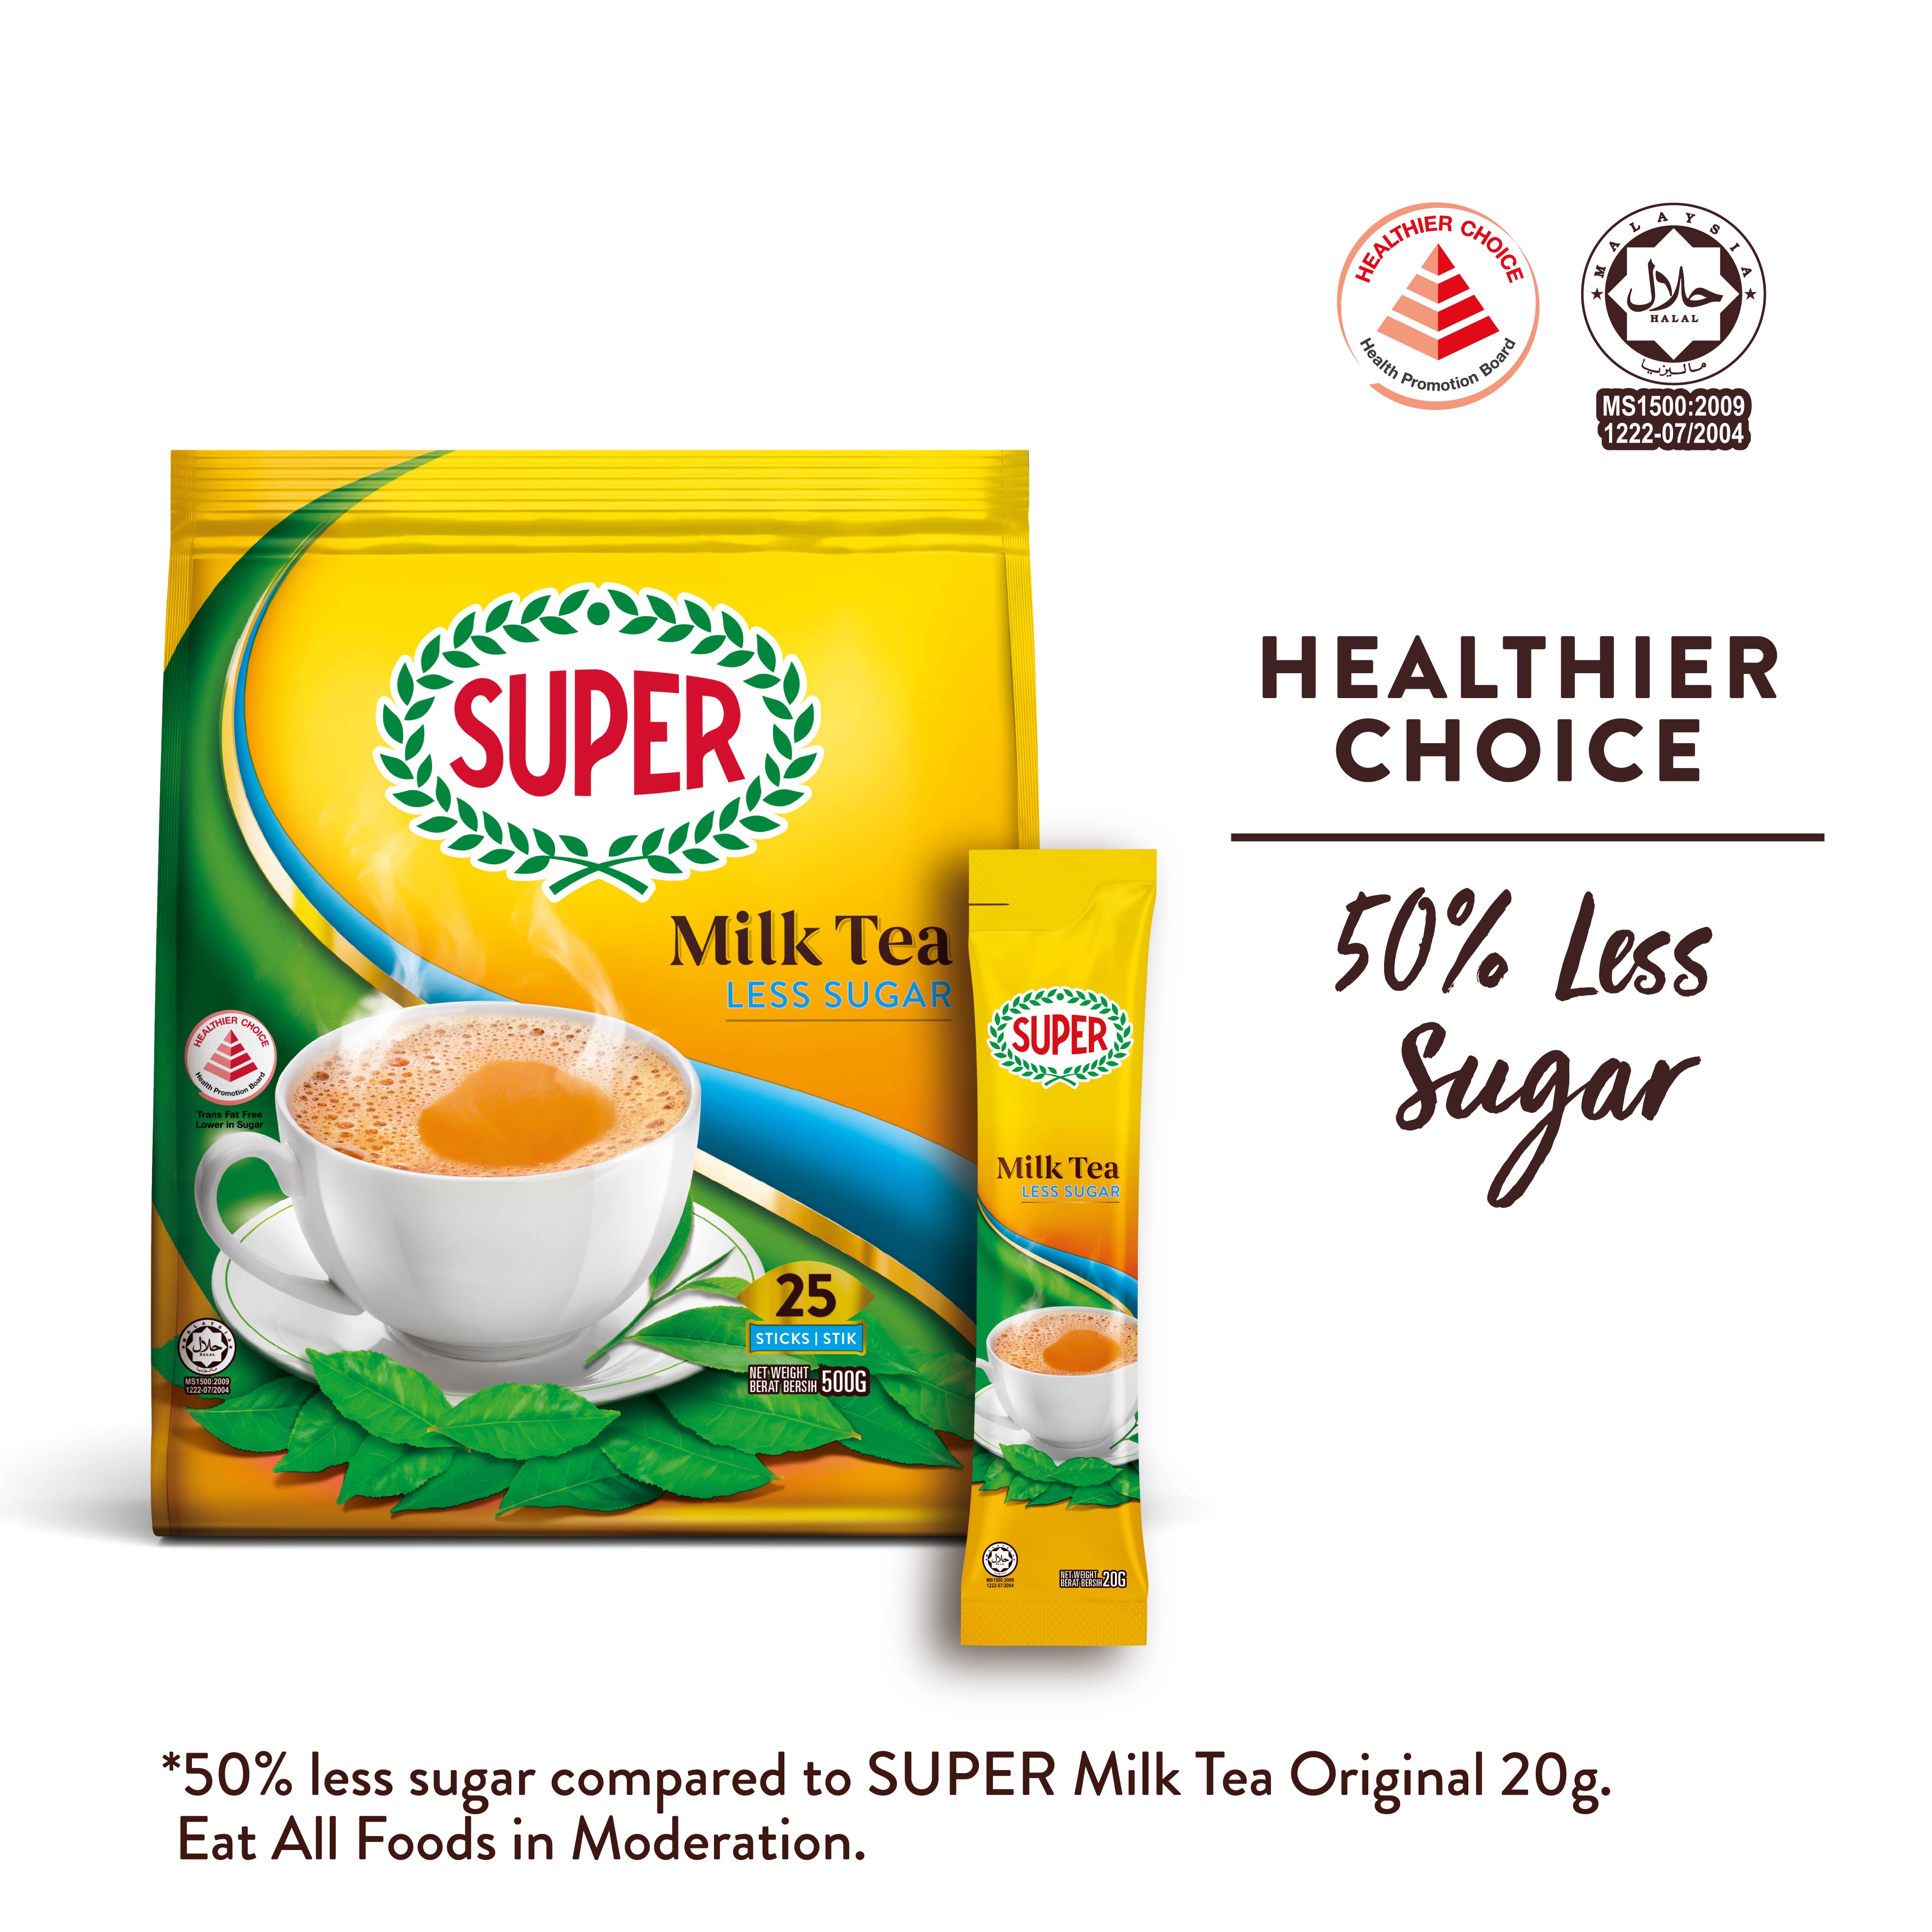 SUPER 3in1 Milk Tea - Less Sugar, 25 sticks